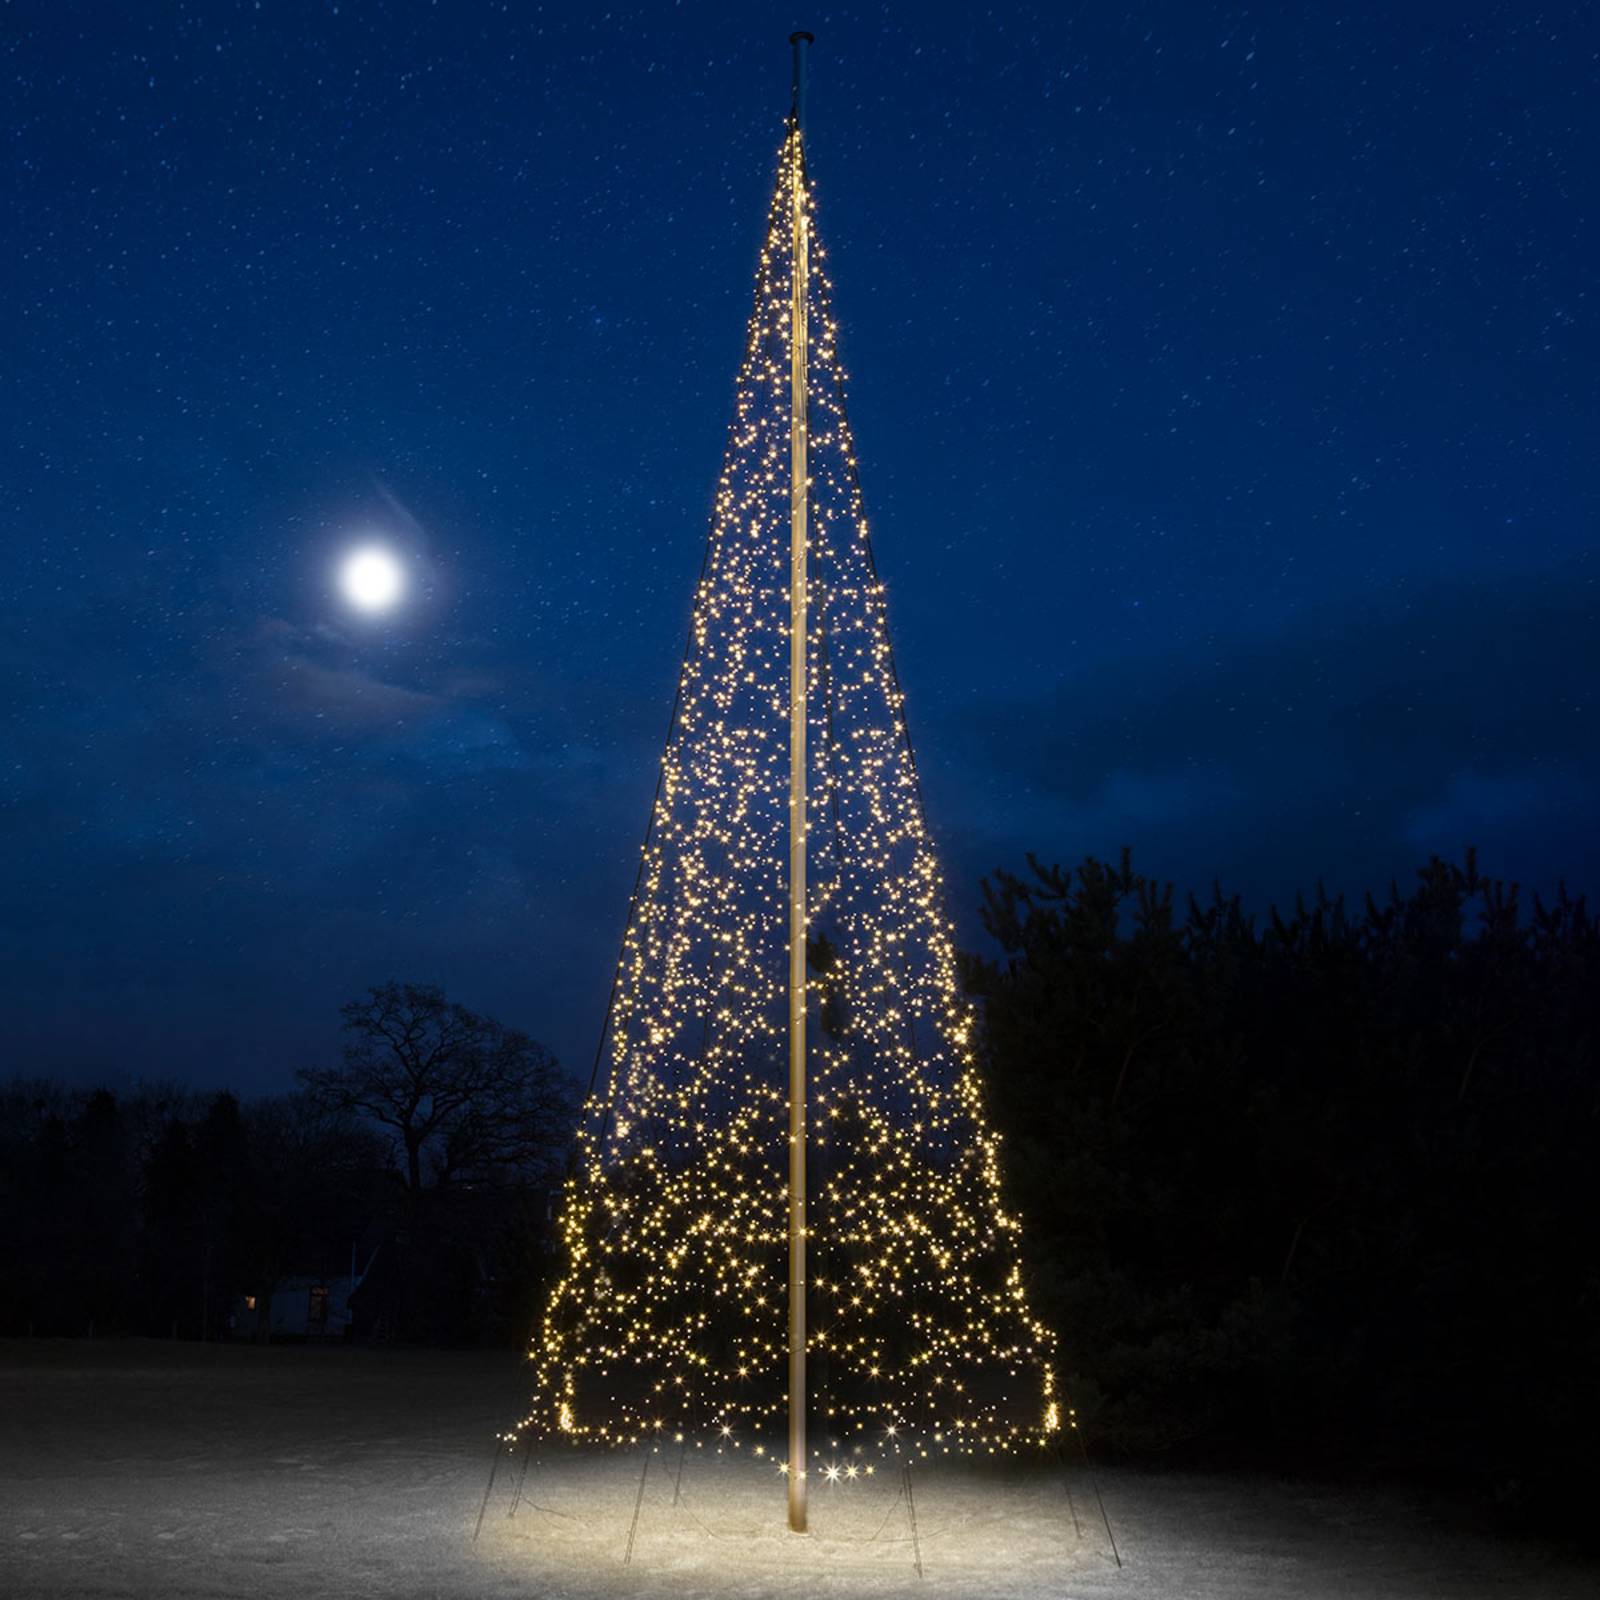 Vianočný stromček Fairybell, 10 m, 4000 LED diód